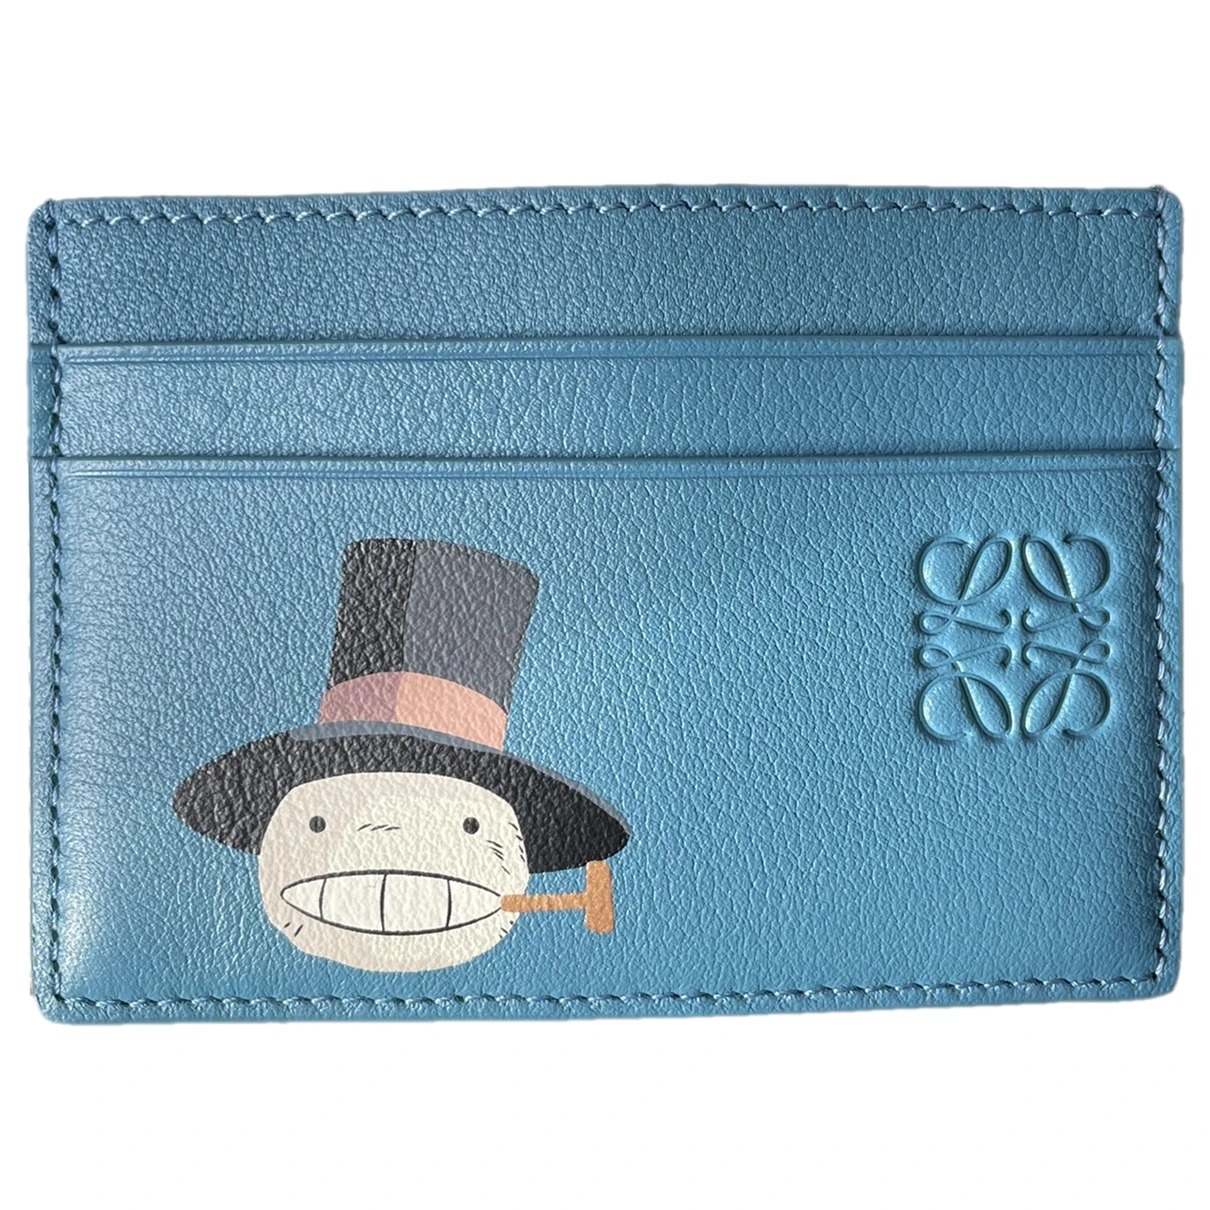 Pre-owned Loewe Leather Wallet In Blue